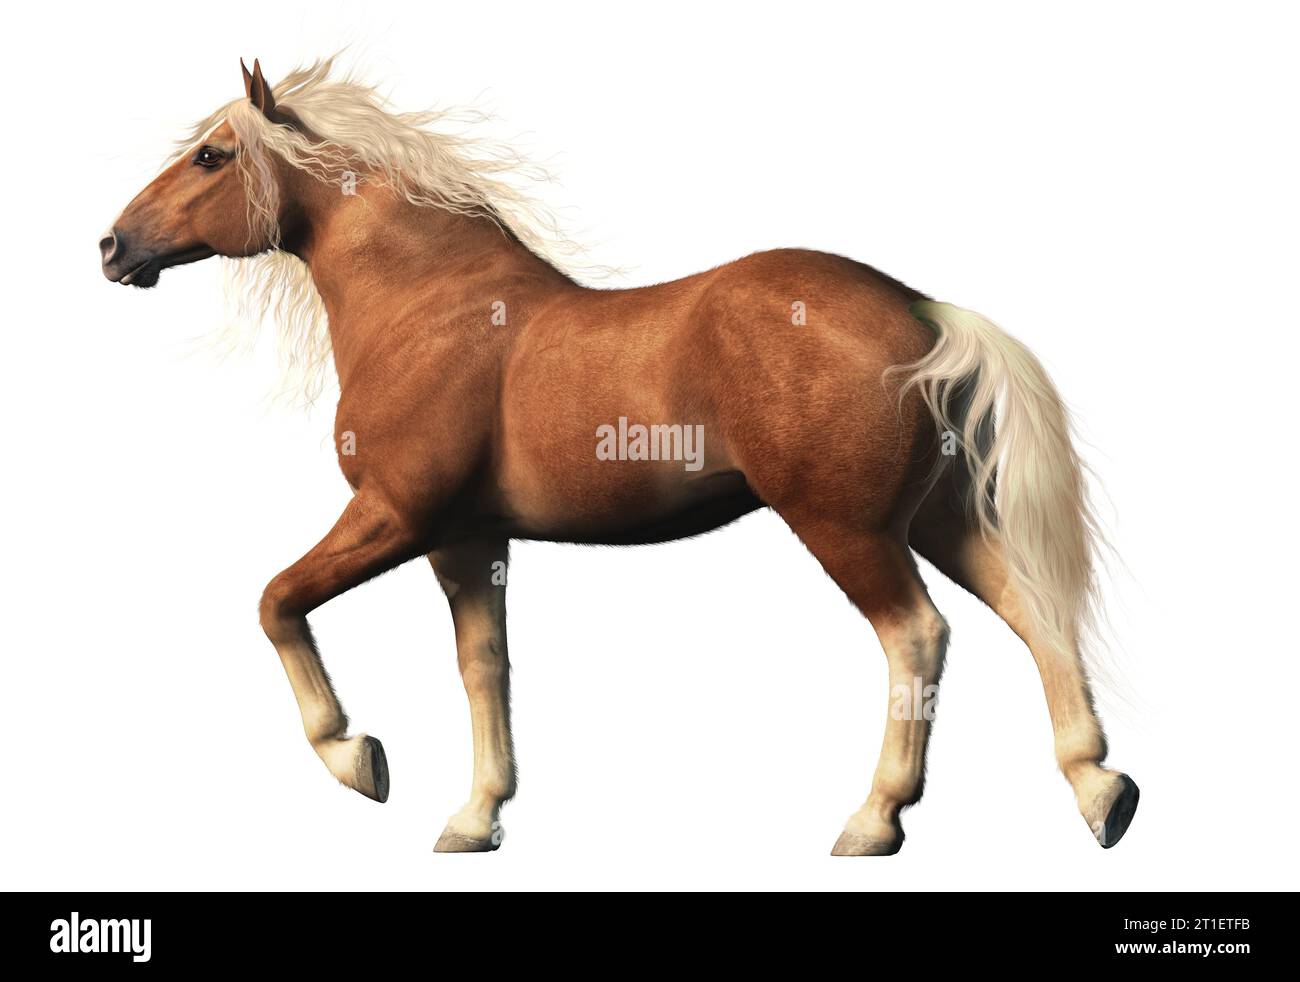 Le cheval belge, est un cheval de trait originaire de la région du Brabant en Belgique. Connu pour sa force et sa robustesse. Banque D'Images